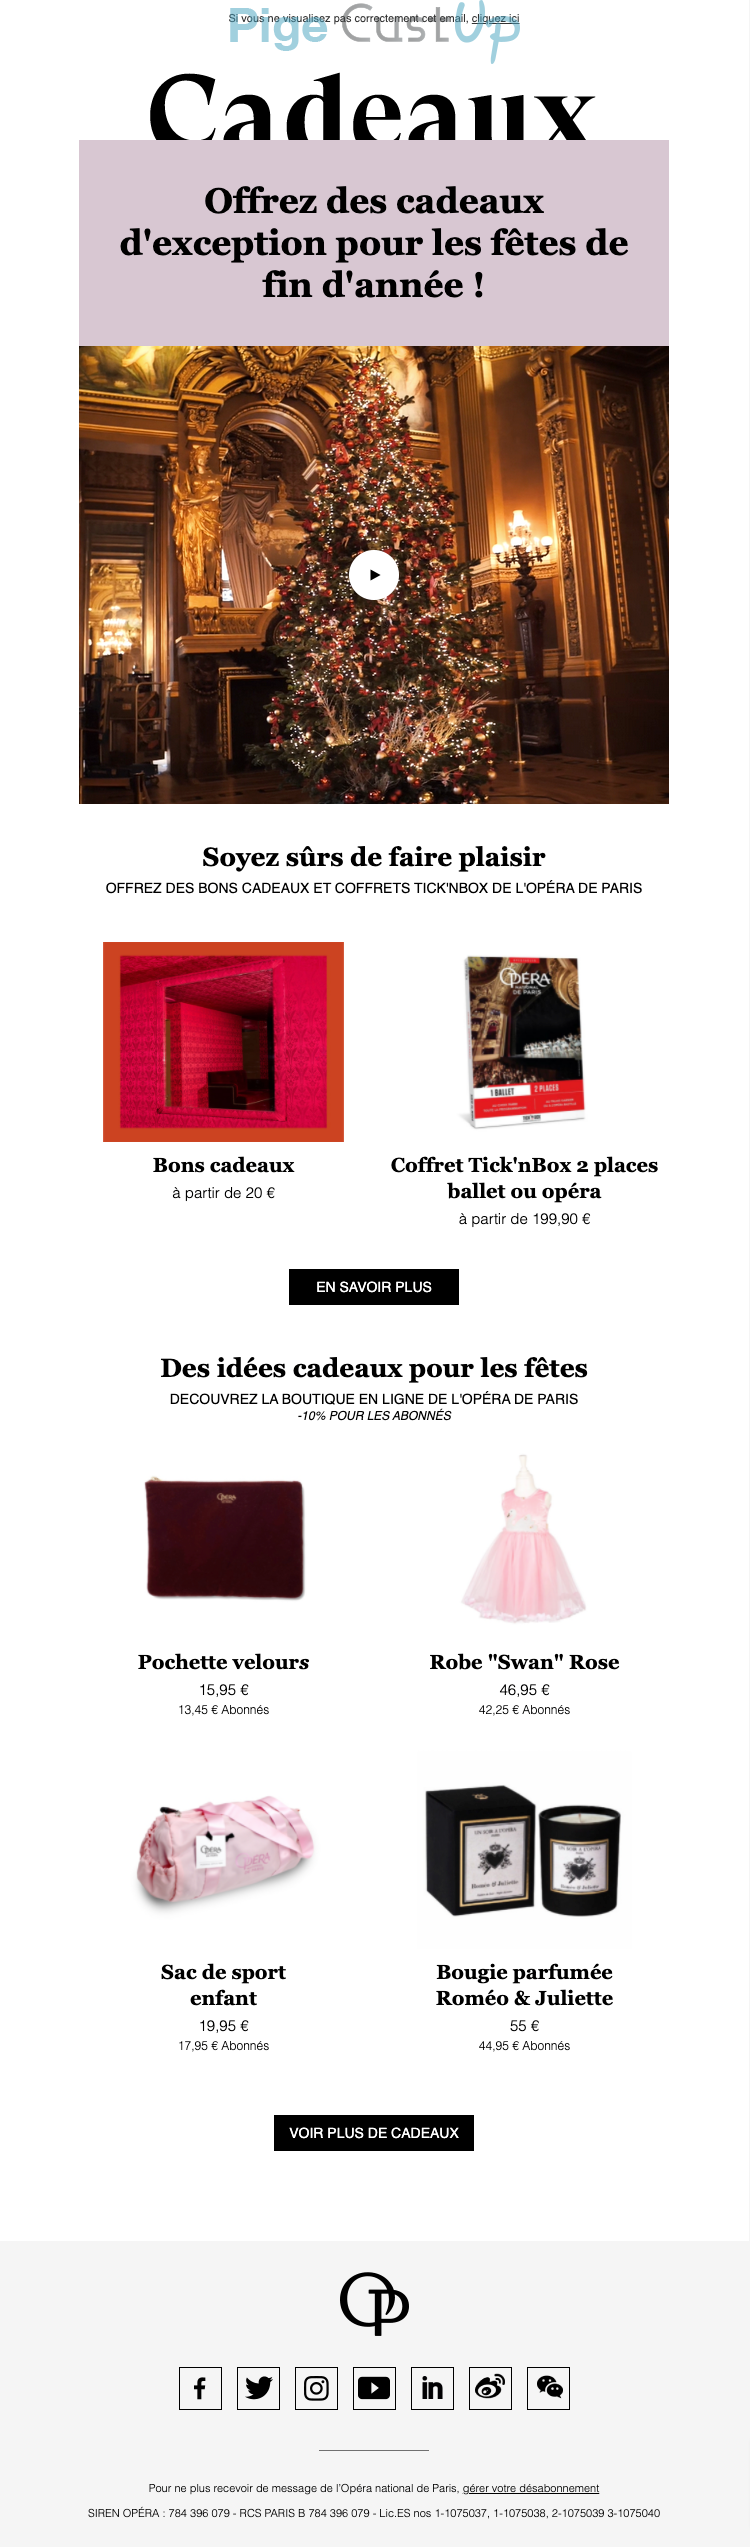 Exemple de Type de media  e-mailing - Opéra de Paris - Marketing relationnel - Calendaire (Noël, St valentin, Vœux, …) - Marketing fidélisation - Incitation au réachat